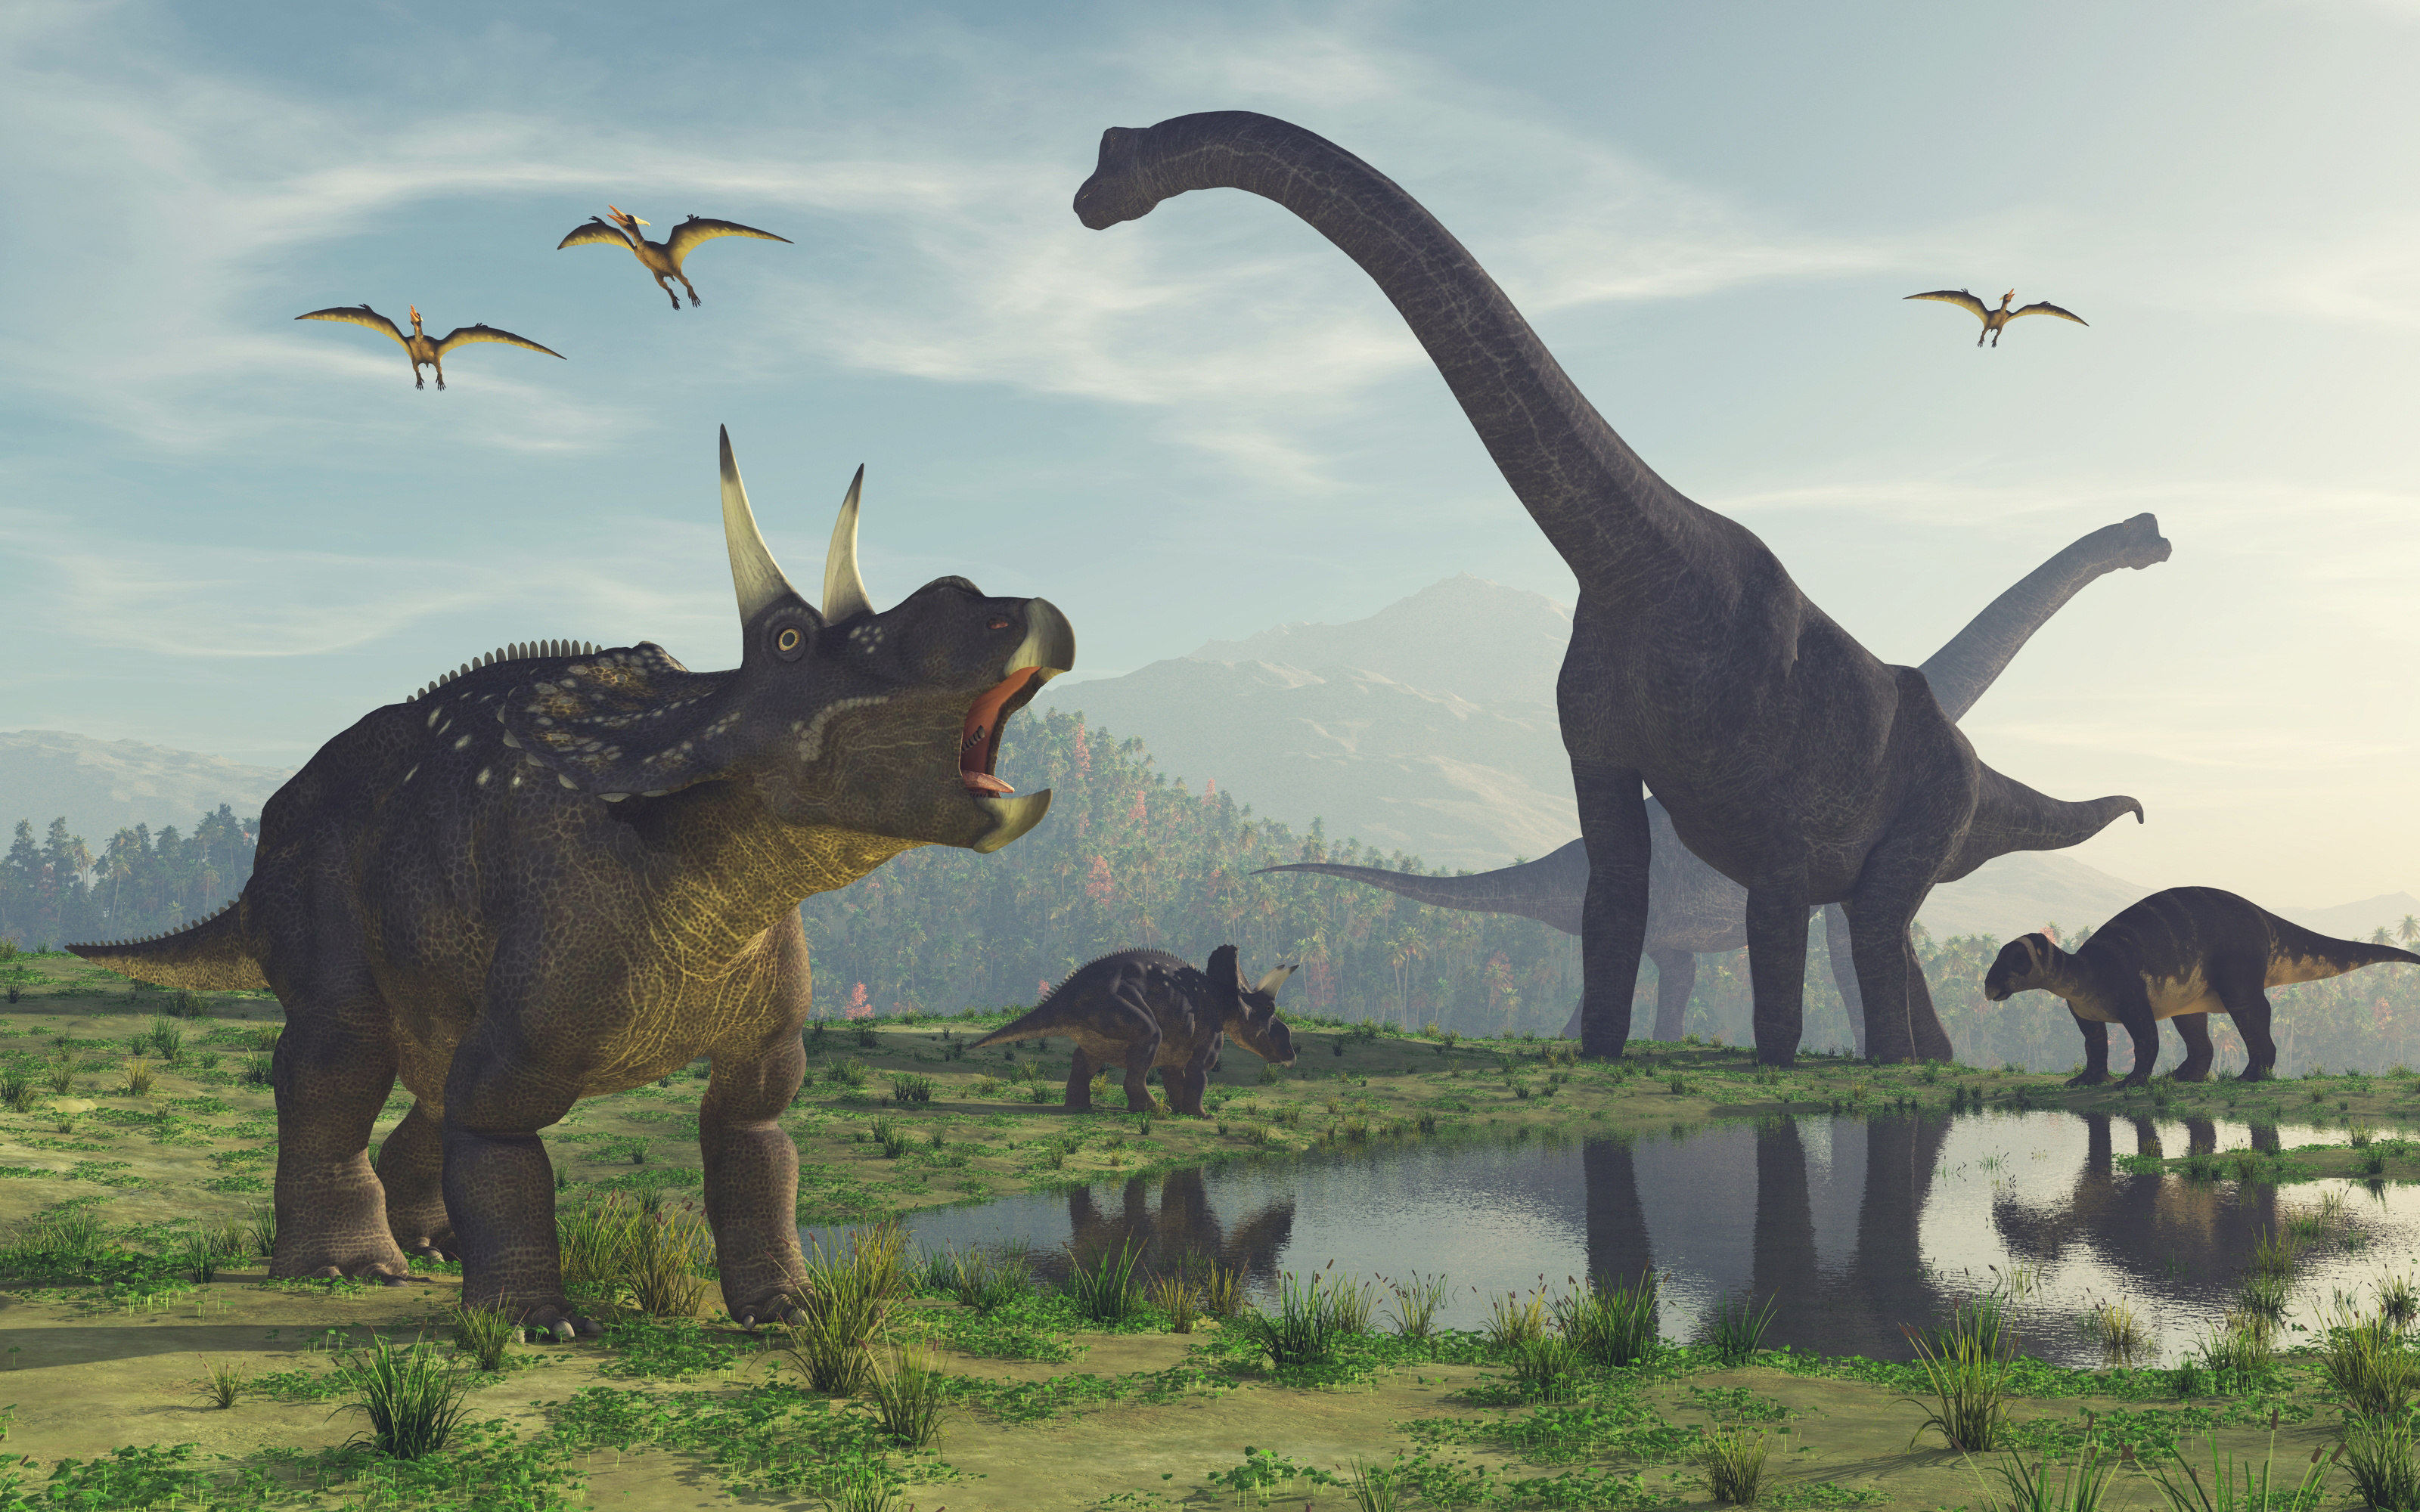 Certains des dinosaures représentés dans Jurassic Park obéissaient davantage à l'expression artistique qu'aux découvertes scientifiques. © Orlando Florin Rosu, Adobe Stock